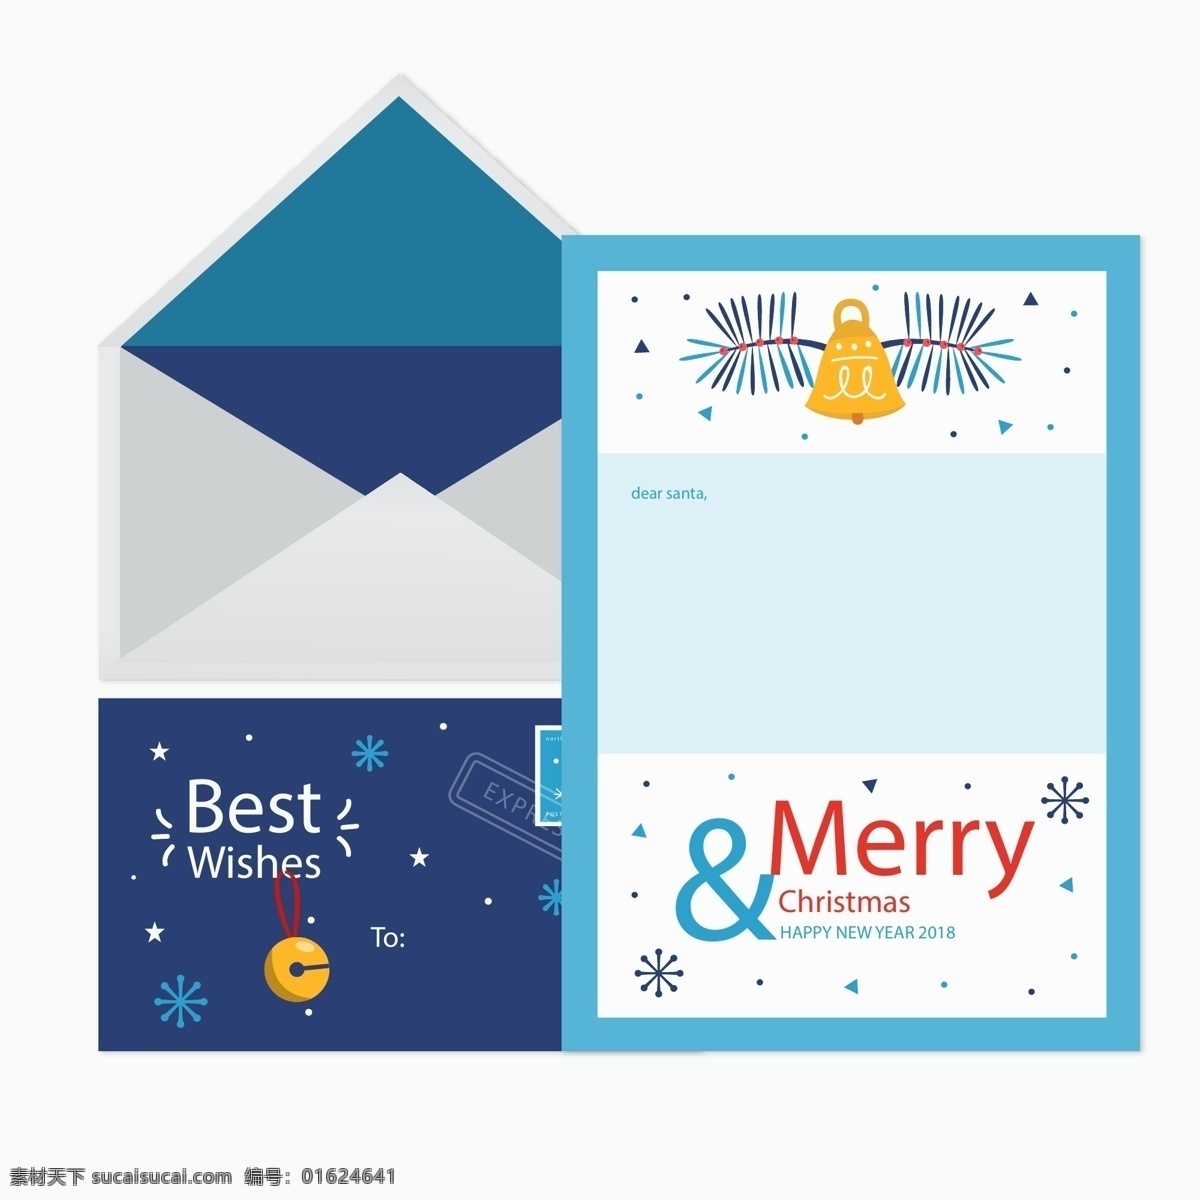 可爱 圣诞 信件 模板 信封 节日素材 圣诞节 圣诞素材 圣诞信件 圣诞元素